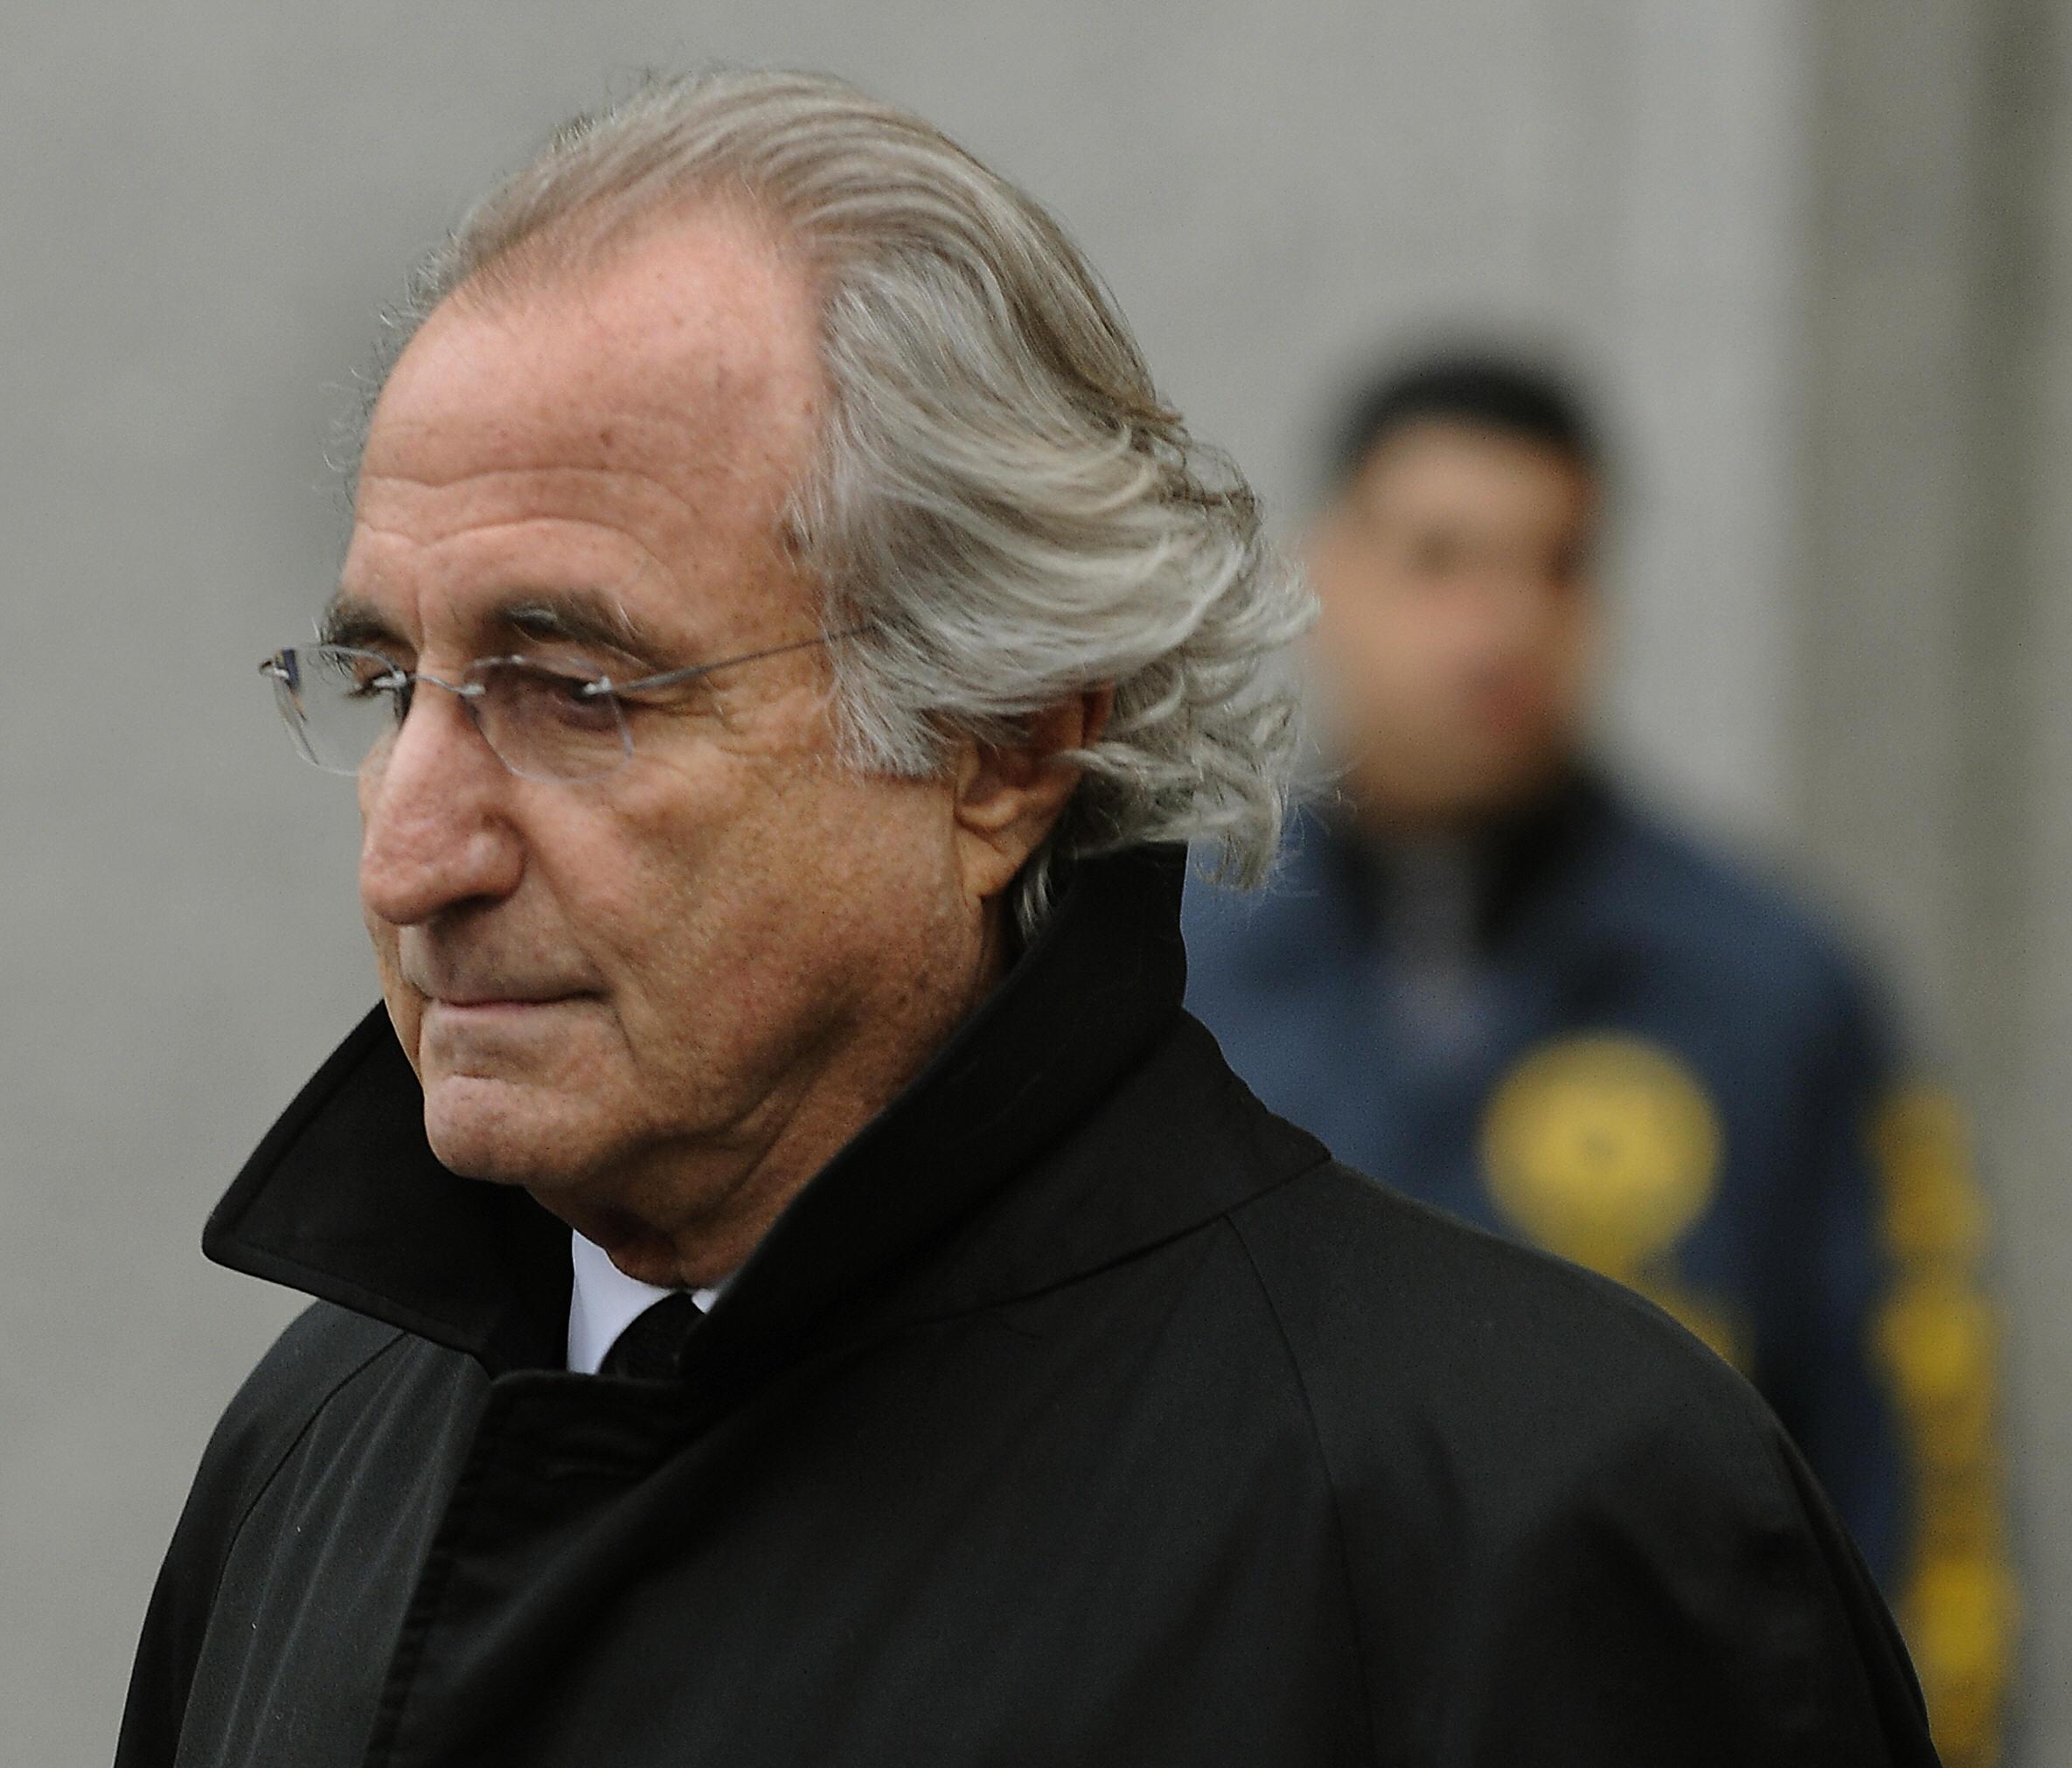 Ponzi scheme mastermind Bernie Madoff has died